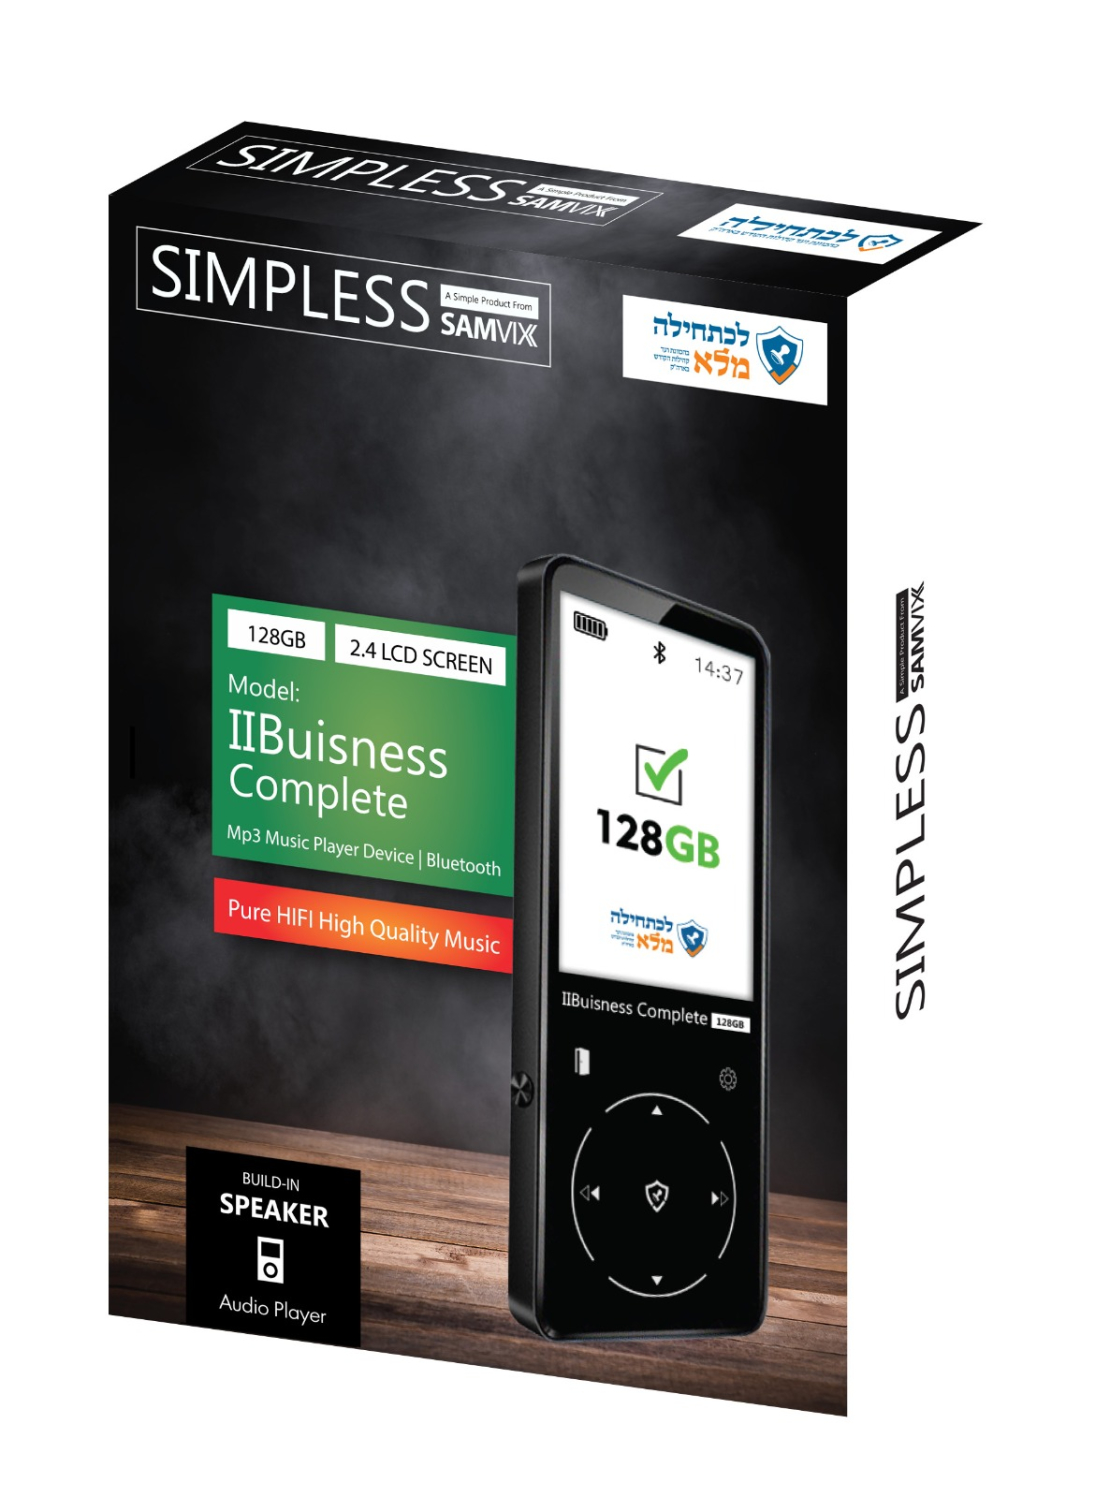 נגן MP3 ביזנס קומפליט 32 GB סאמויקס | Samvix BUSINESS COMPLETE 32 GB